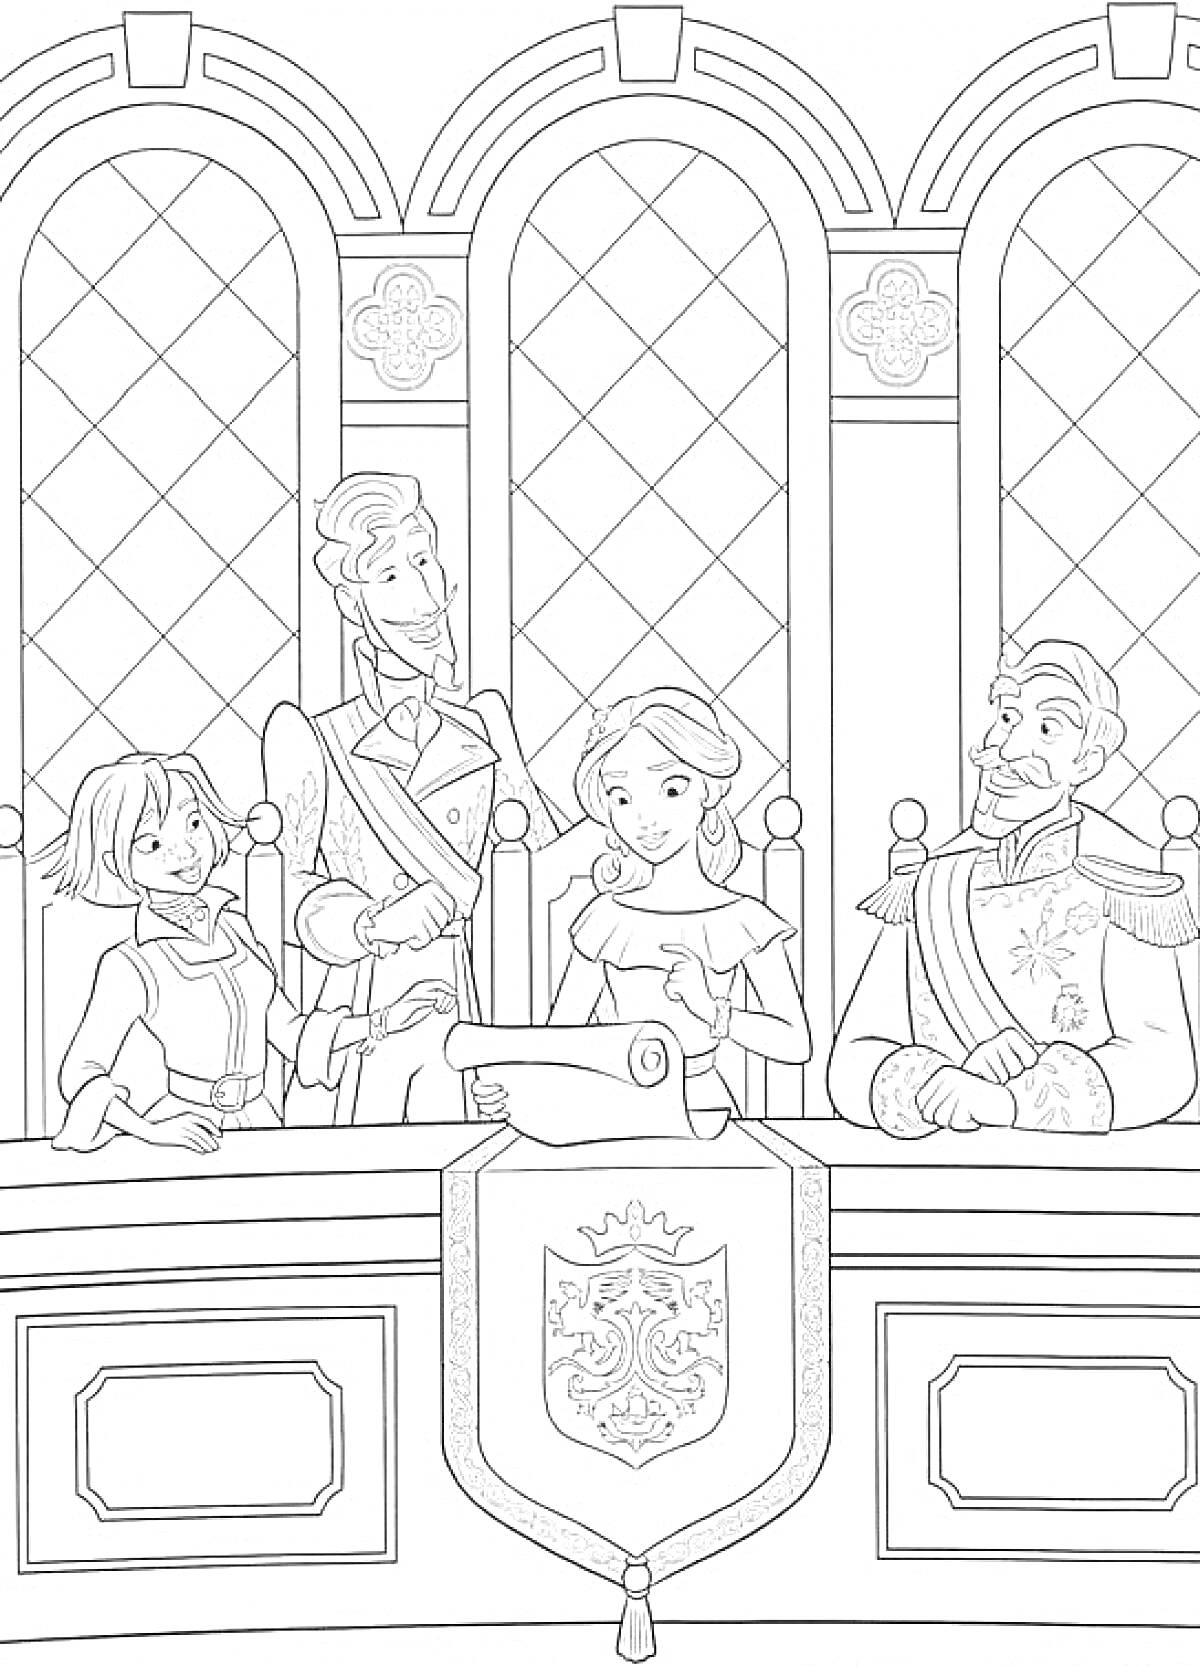 Раскраска Елена из Авалора за столом с картой, в окружении трех людей, в зале с арочными окнами и гербом